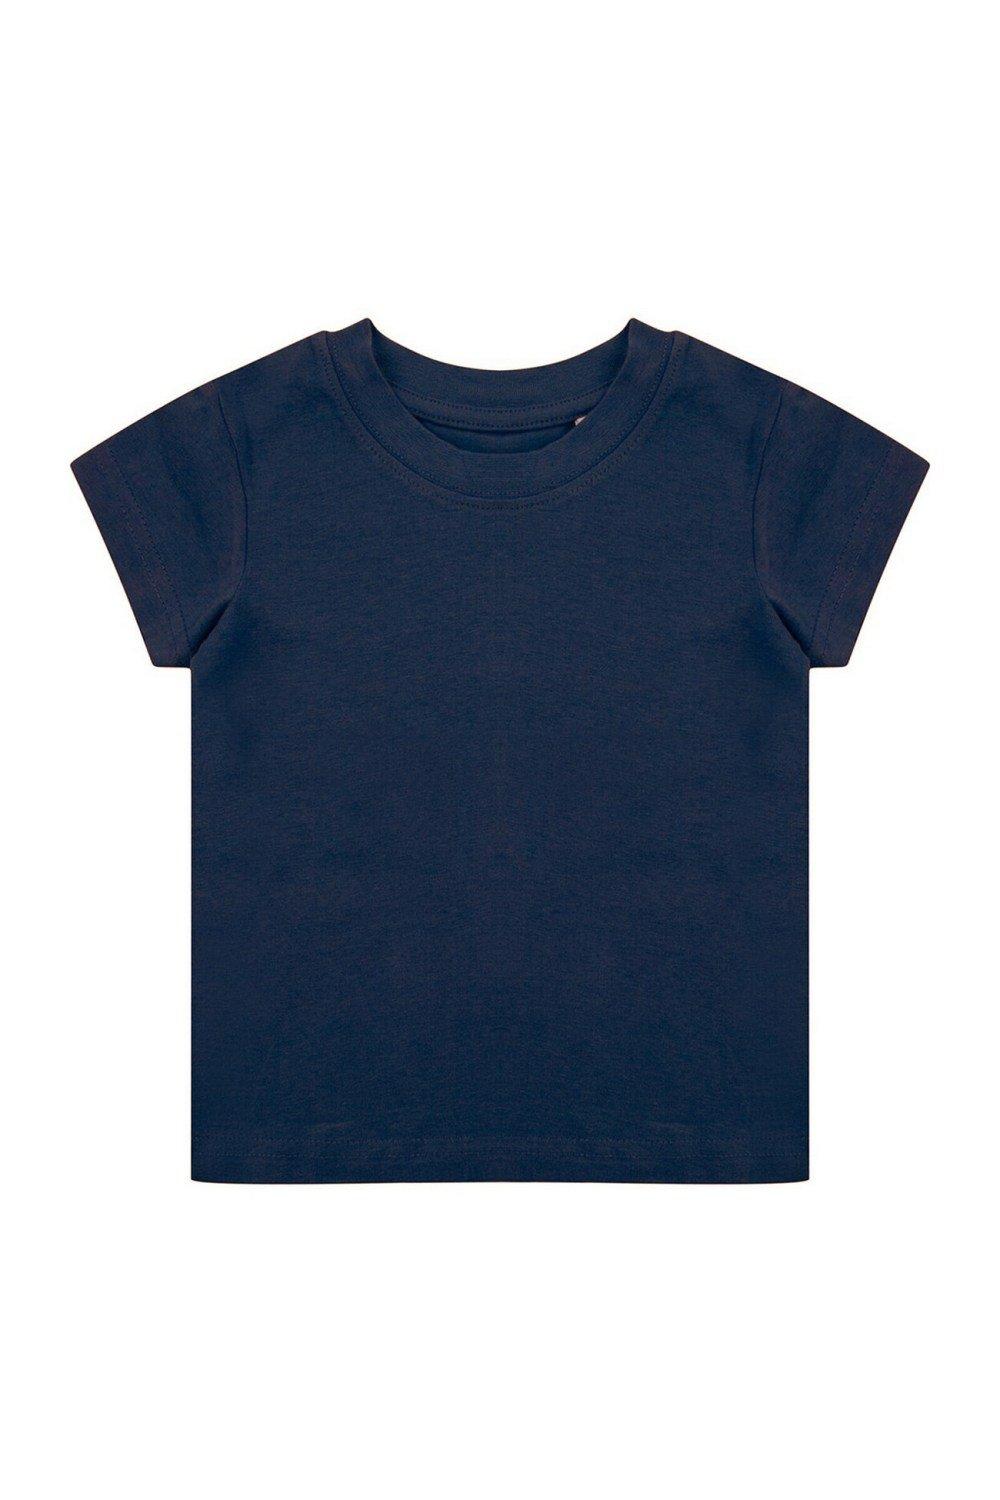 Органическая футболка Larkwood, темно-синий костюм размер 12 18 мес